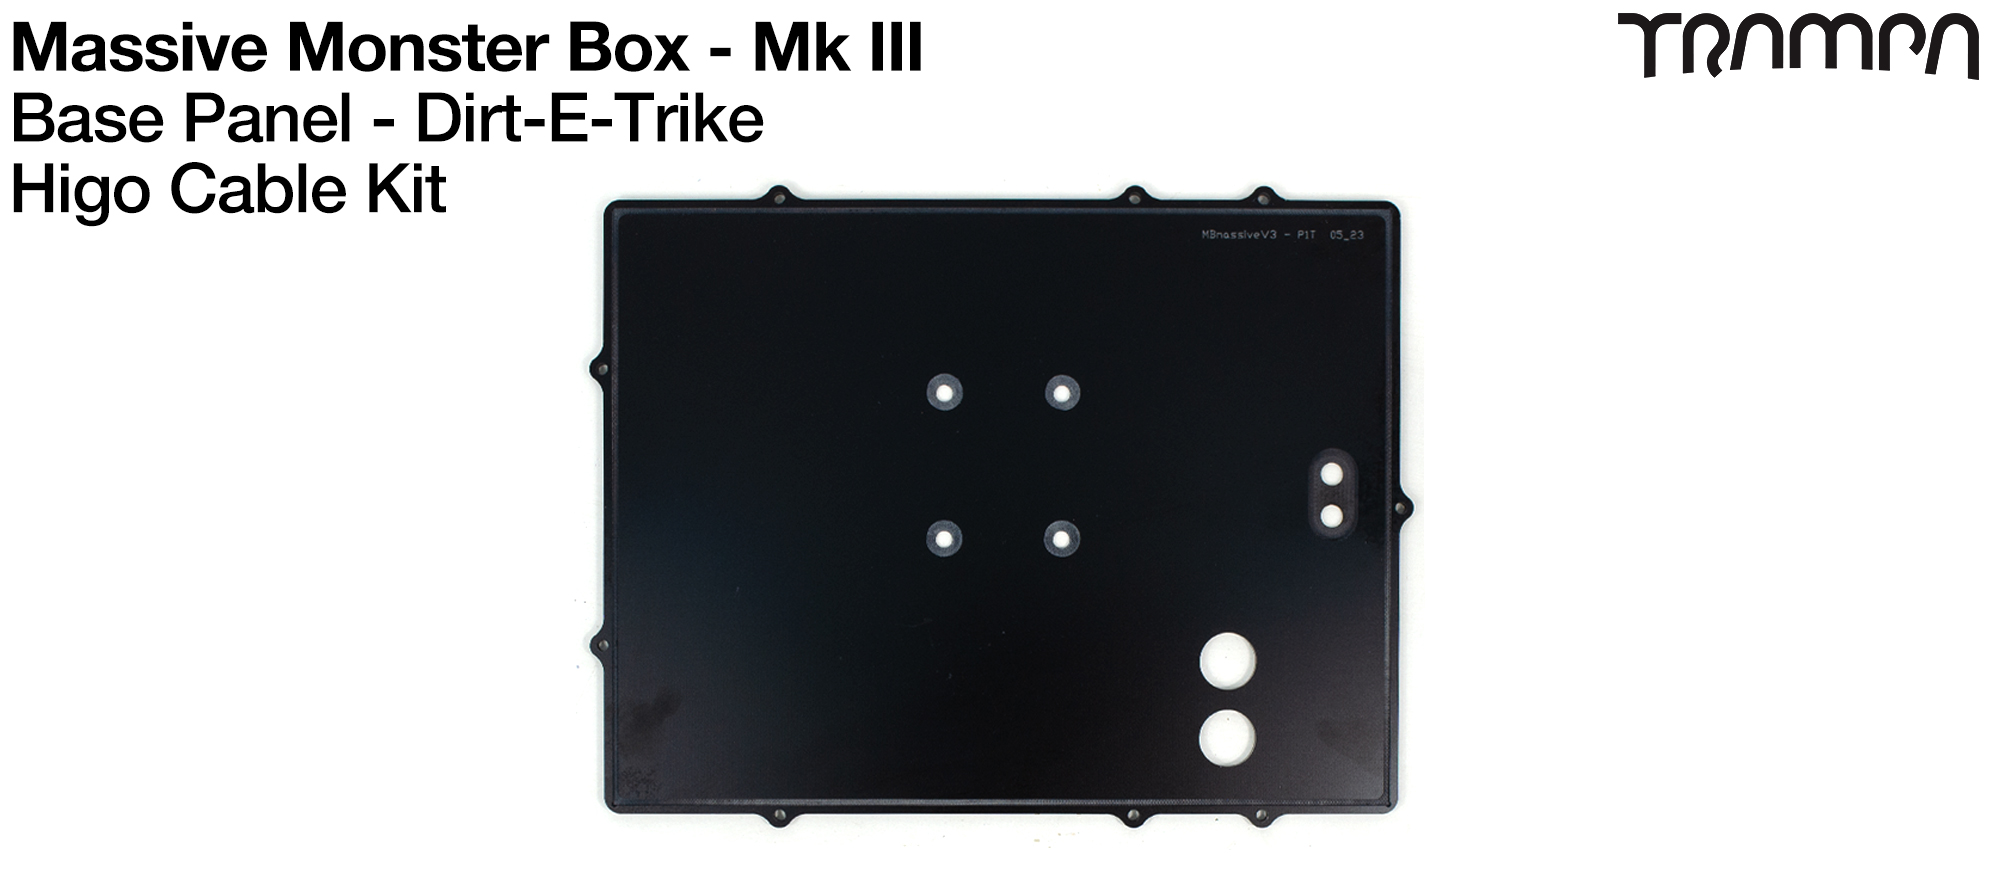 Mk III Massive Monster Box - BASE Panel for Drift Trikes - Higo Cable Kit